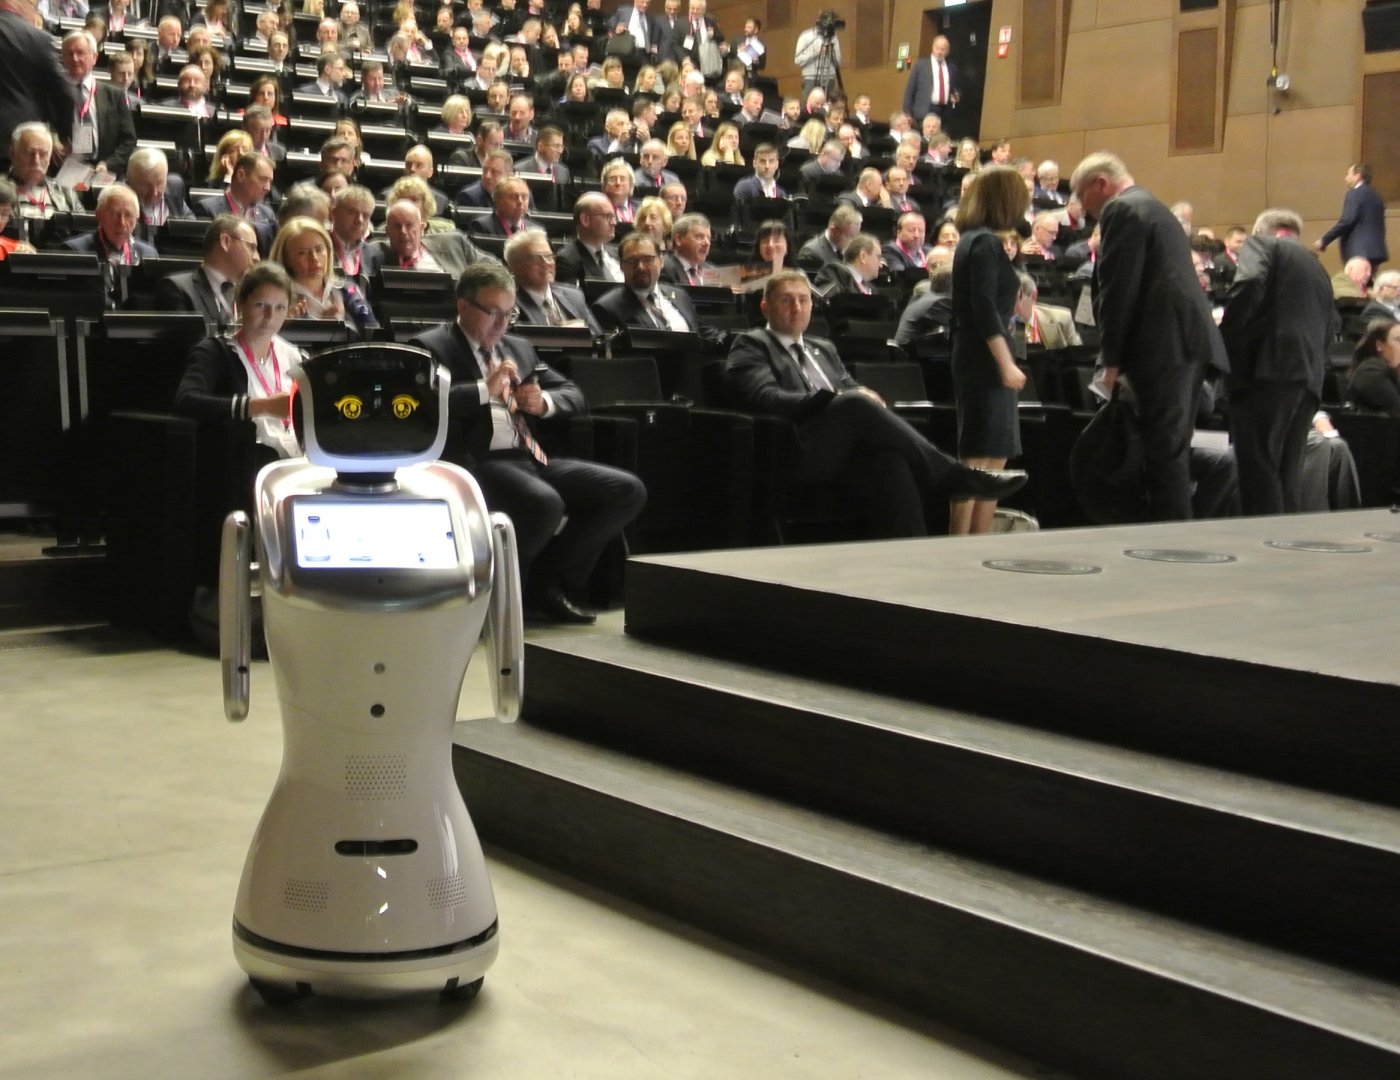 na pierwszym planie widoczny jest stojący robot humanoidalny. W tle siedzące osoby z publiczności.